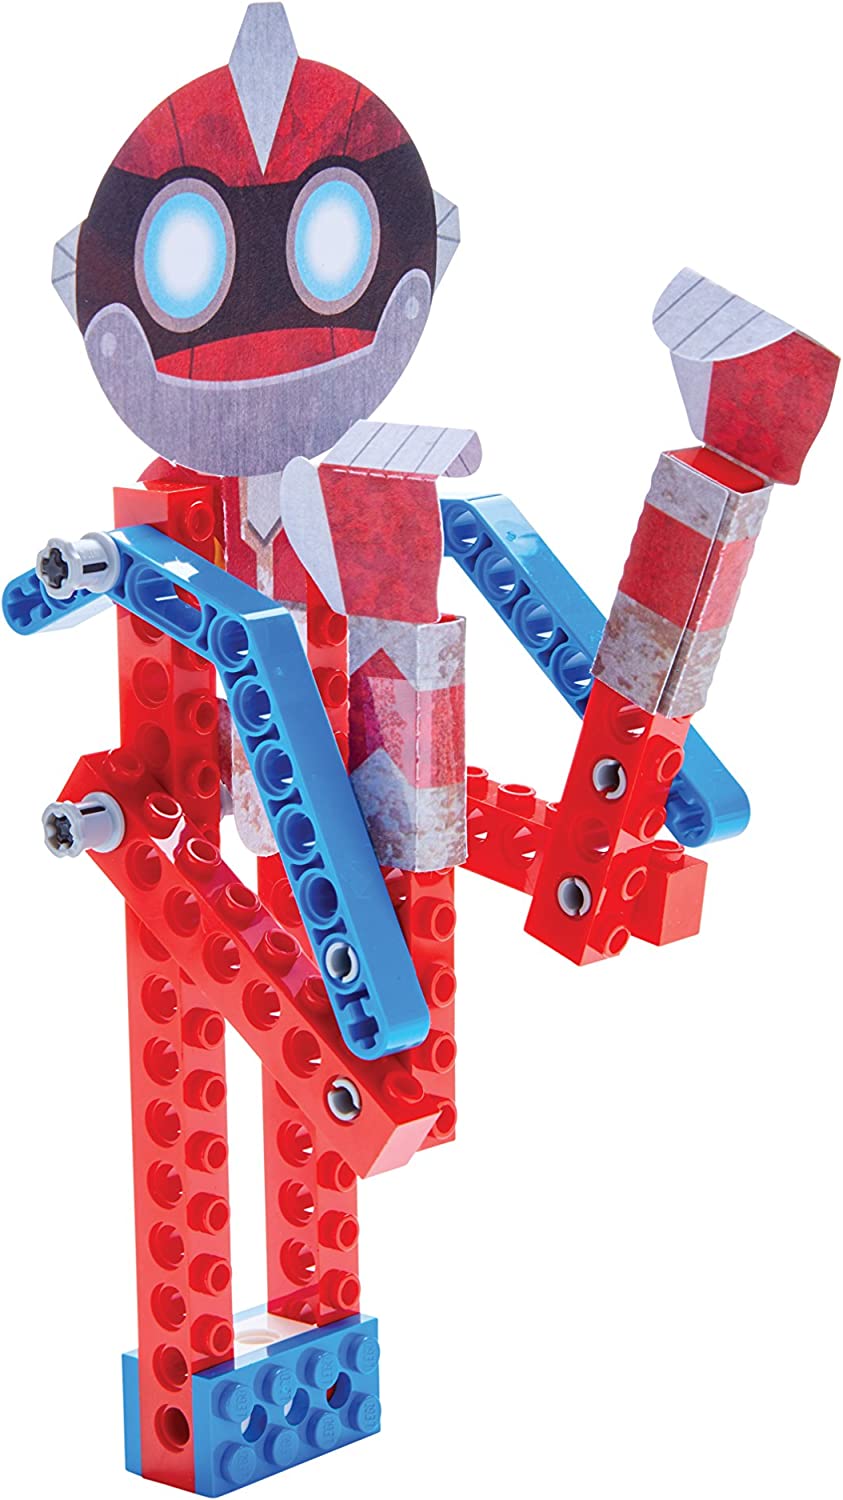 KTZ - Klutz Klutz Lego Gadgets - Little Miss Muffin Children & Home